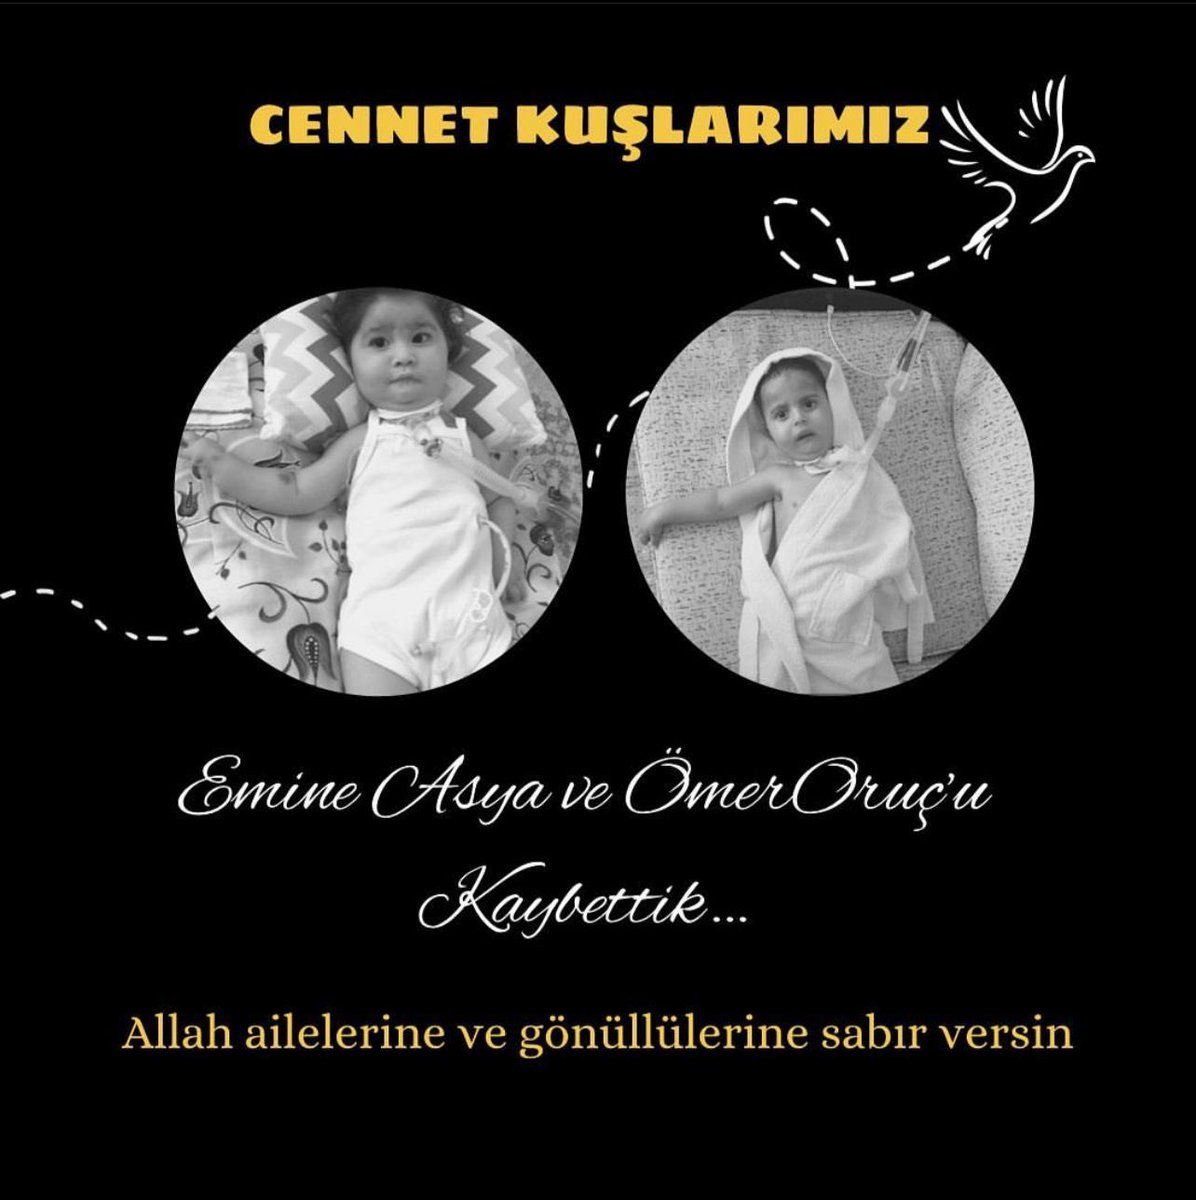 İki bebeğimiz daha bu savaşta sesini duyuramadı. Elif Sare ailesi olarak ailelerine, gönüllülerine ve hepimize baş sağlığı diliyoruz. Rabbim sabır versin🙏🙏 @smaemineasya @omerehayatol